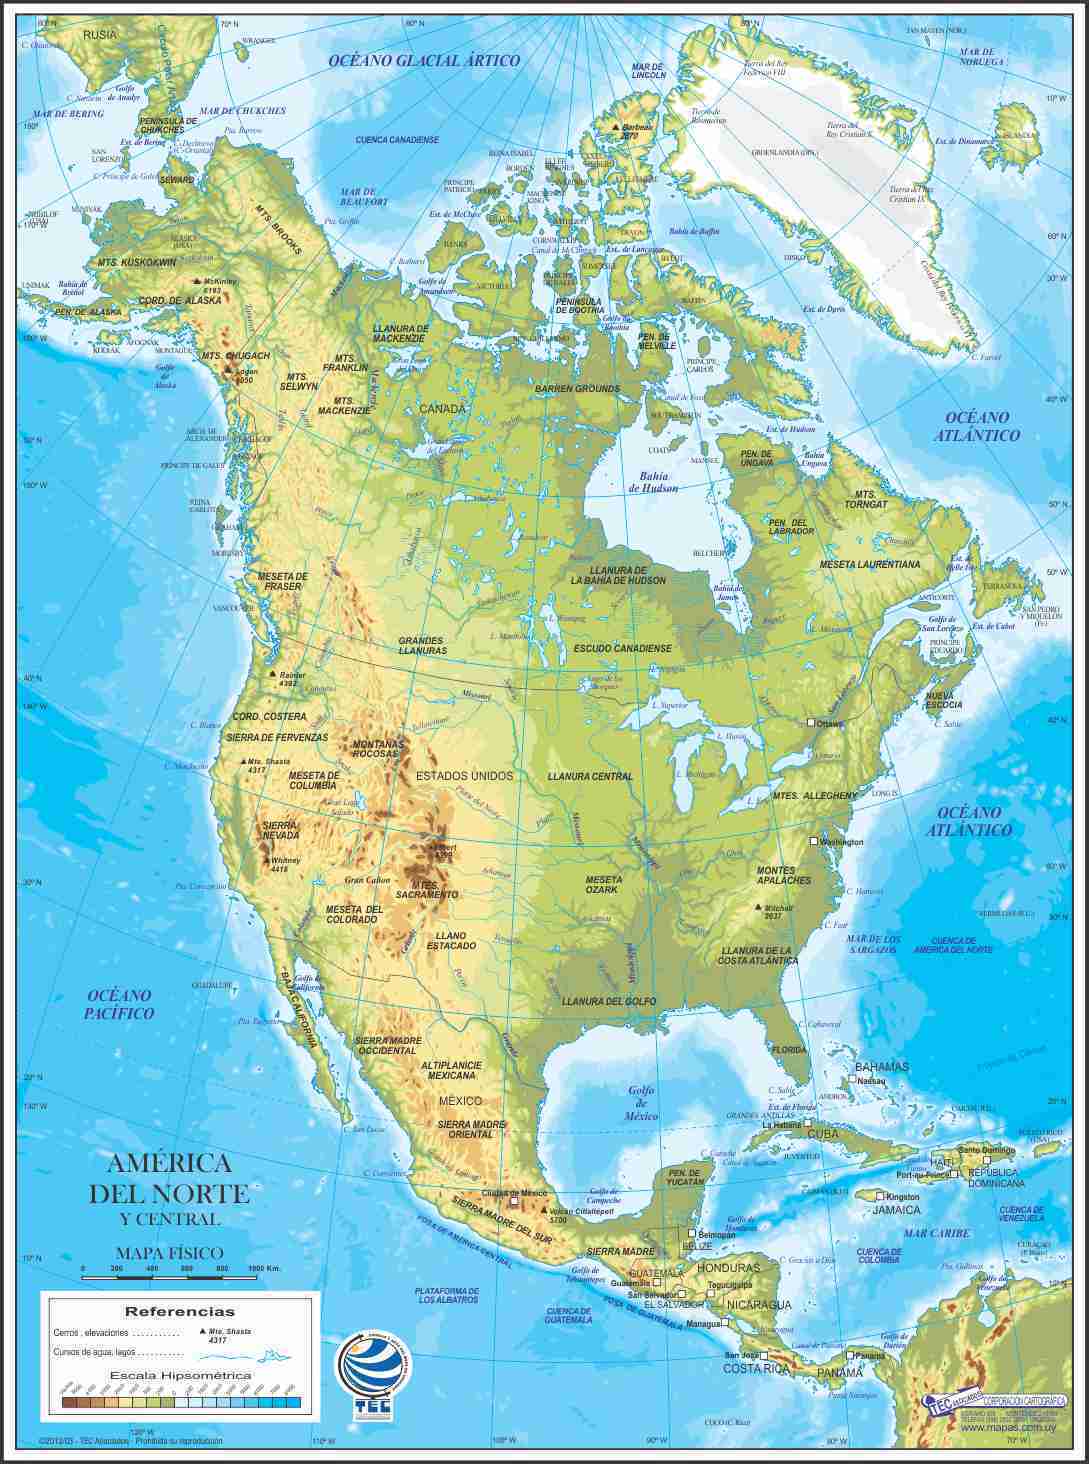 Mapa de América del norte | Paises y Capitales de Norteamérica